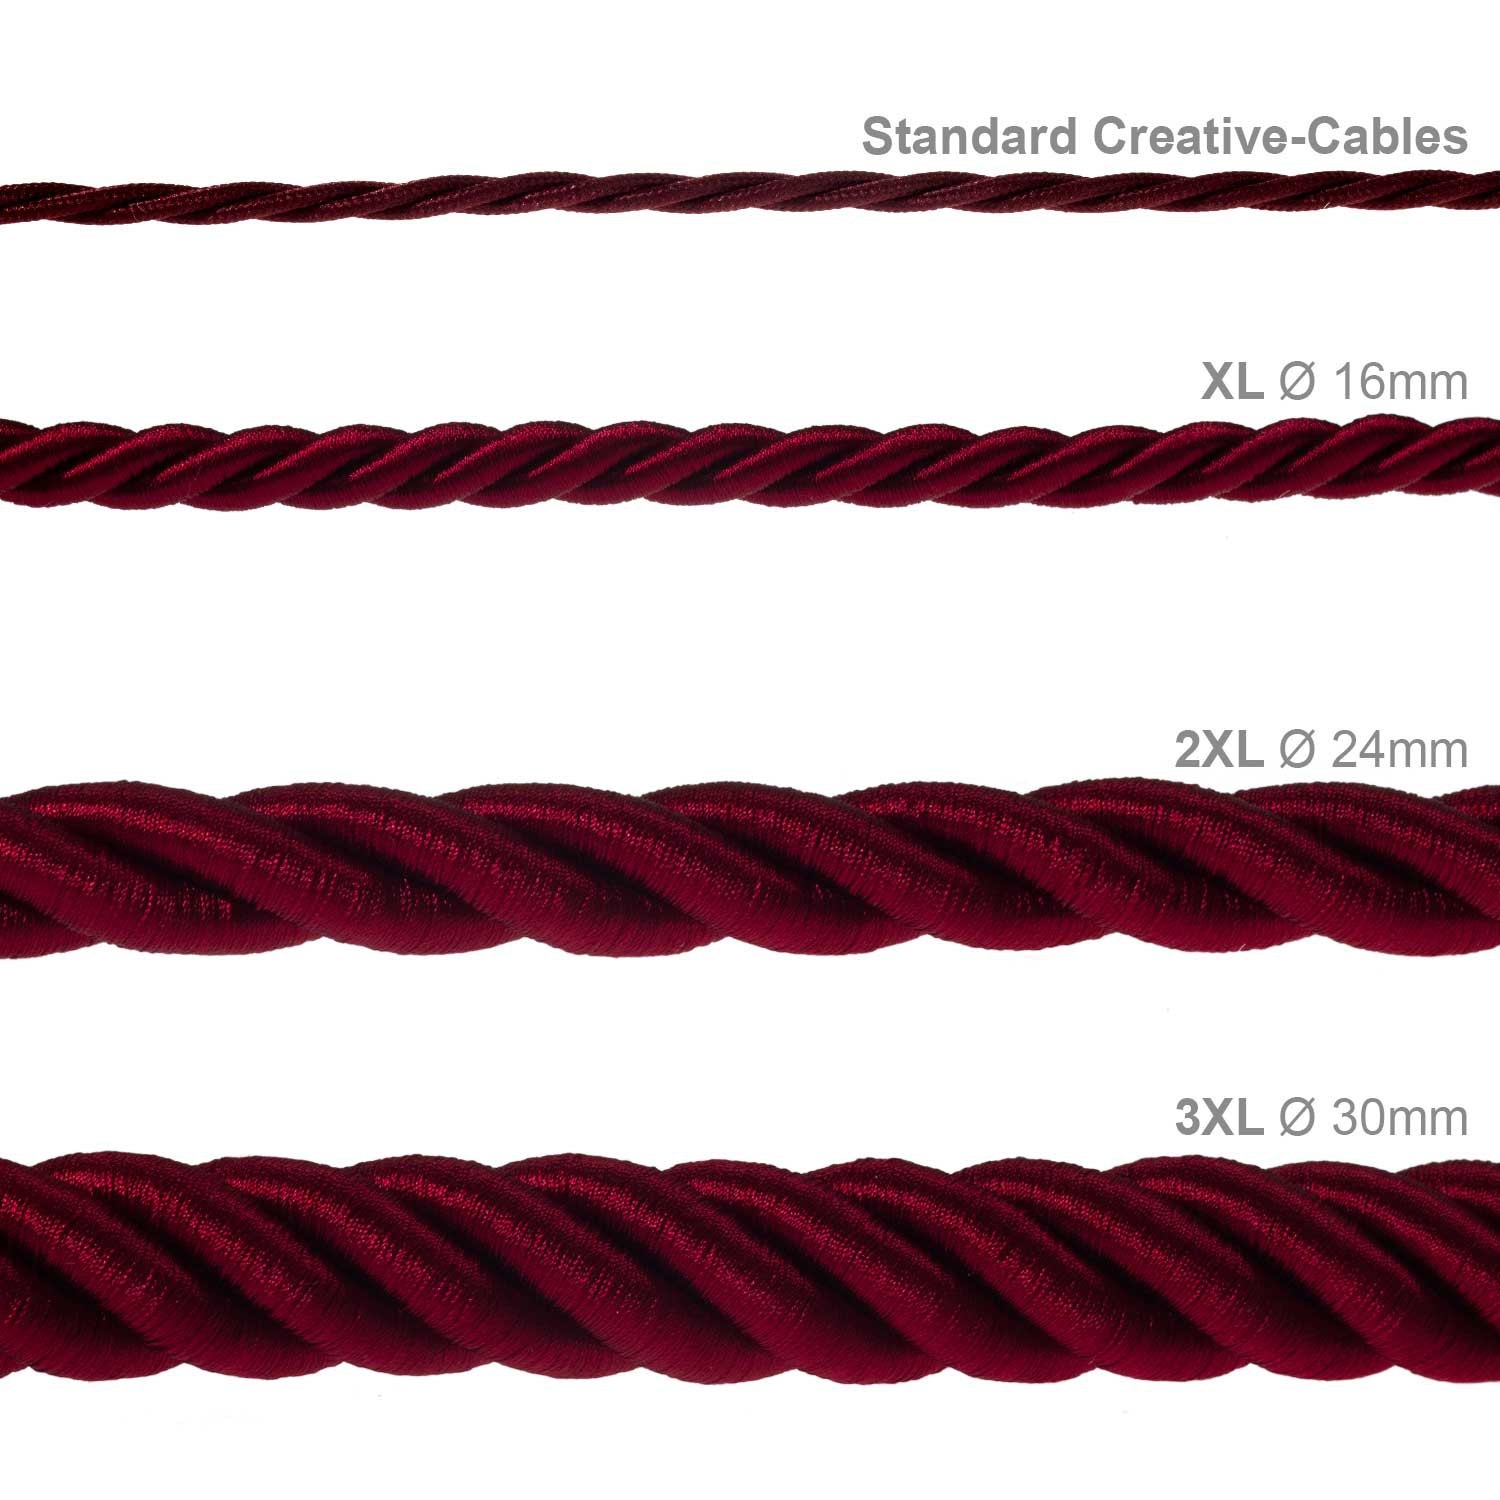 Electrische 3XL touwkabel, 3 x 0,75 mm. Binnenkabels bedekt met bordeaux textiel. Diameter 30 mm.